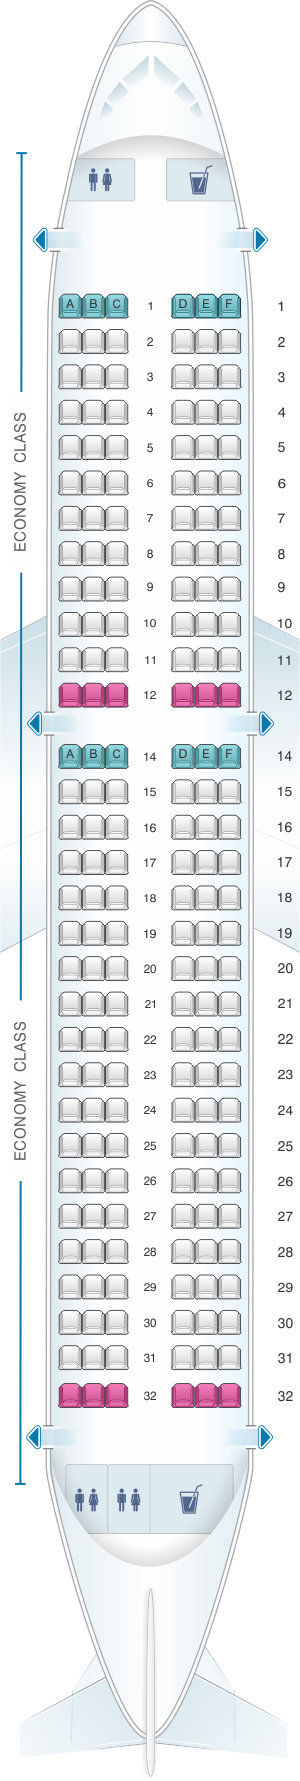 Seat Map Iberia Airbus A320 Neo | SeatMaestro